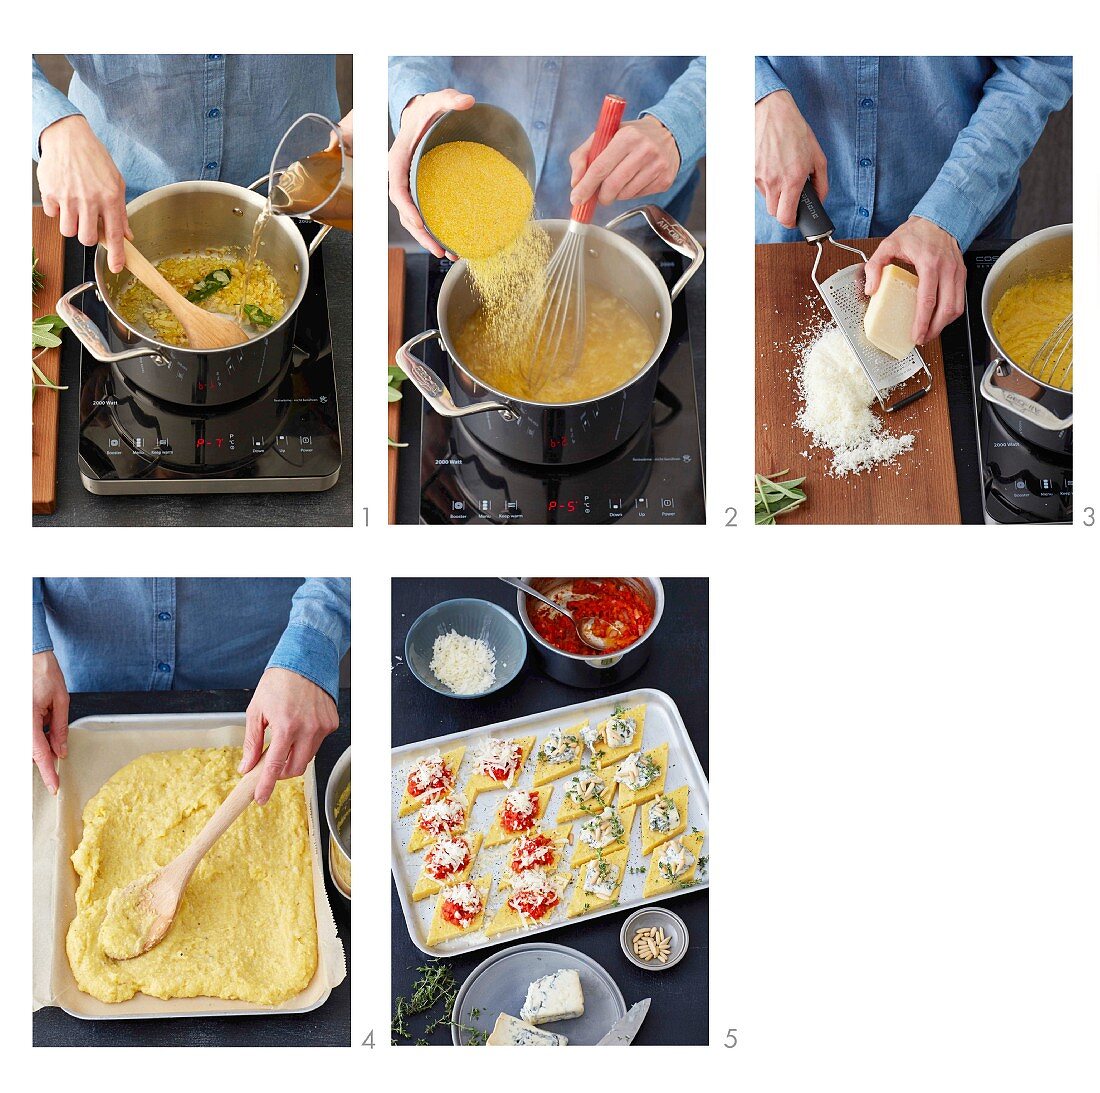 How to prepare baked polenta diamons with tomato sugo and gorgonzola